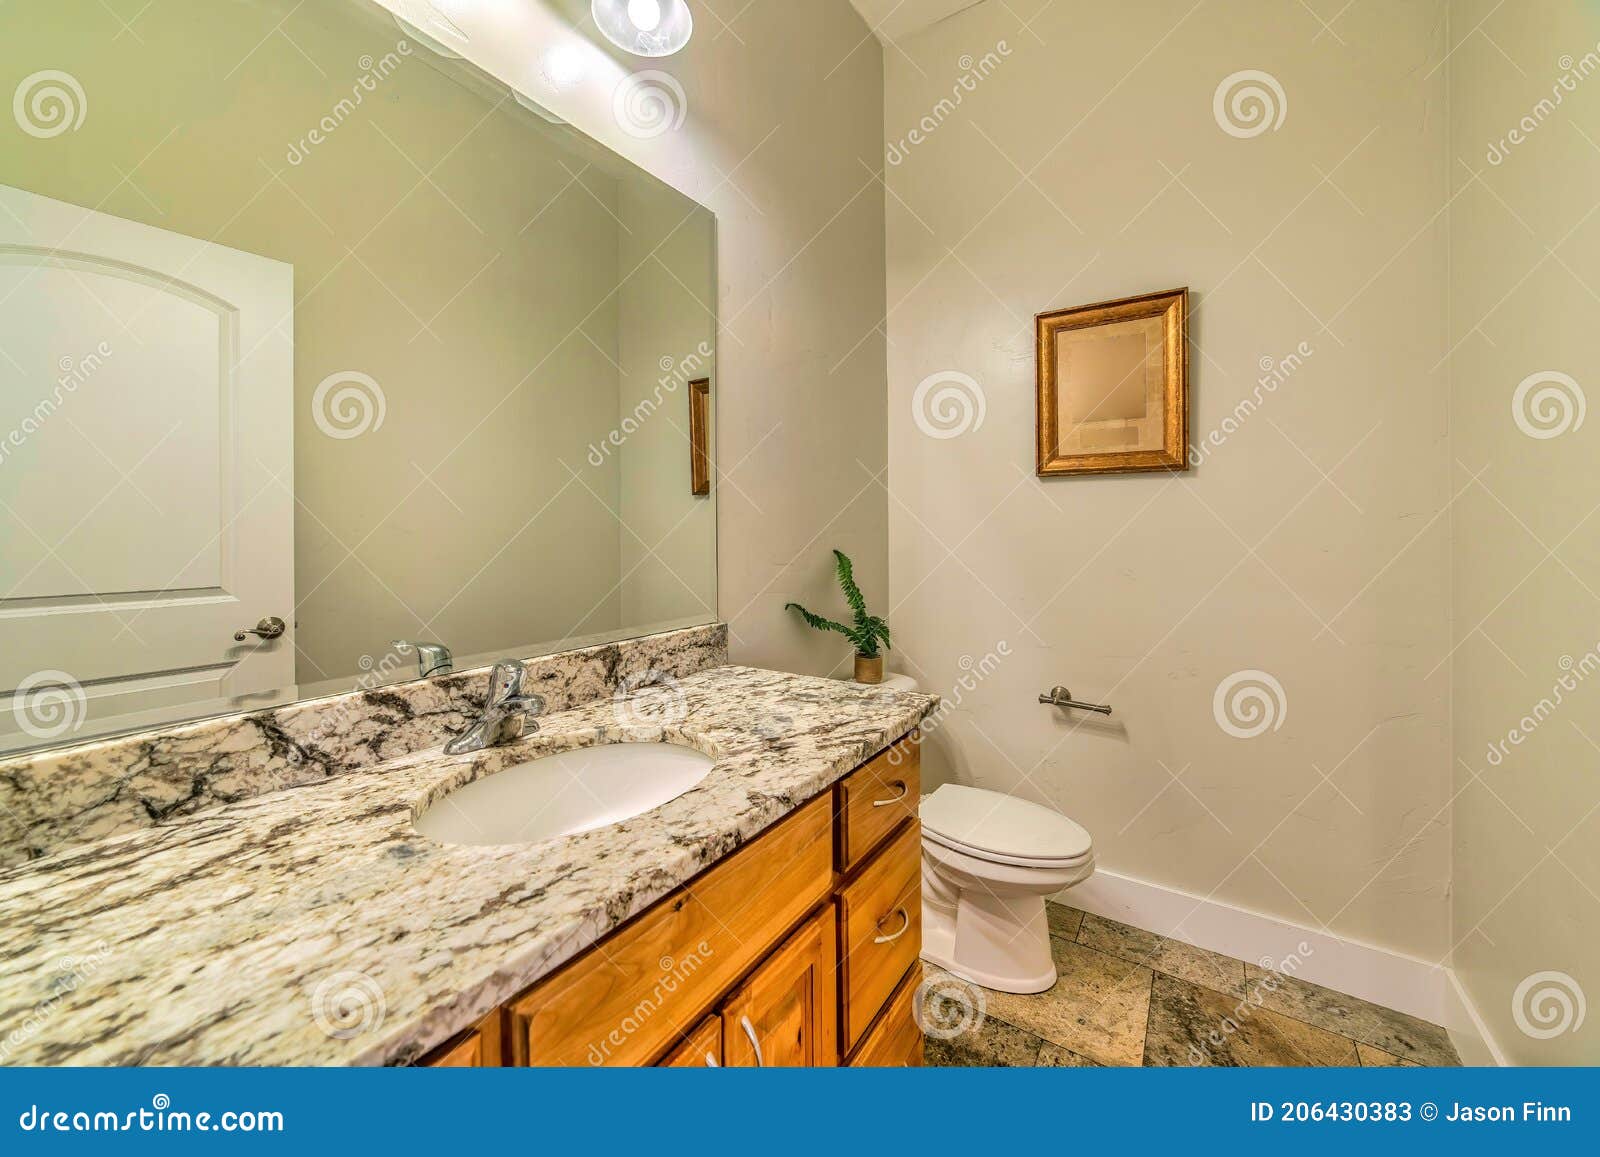 Hauptbadezimmer Mit Toilette Neben Marmorcountertop Mit Ablagen